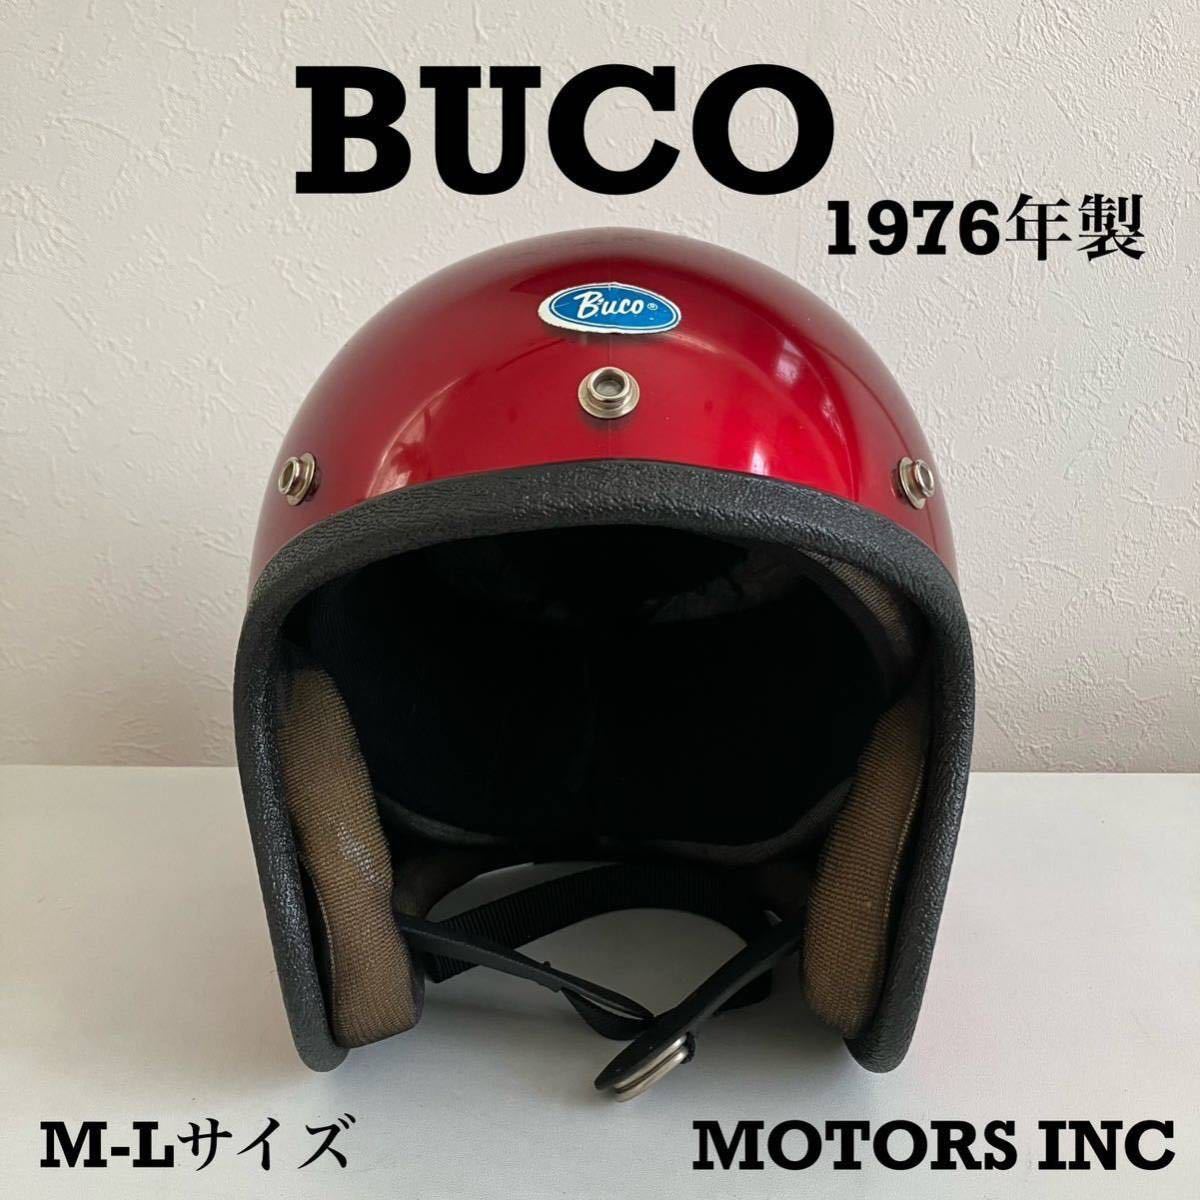 BUCO★1976年製 ブコ 内装リペア済み ビンテージ M-Lサイズ 赤 ヘルメット ジェットヘルメット 美品 レア 当時物 旧車 buco MOTORS INC